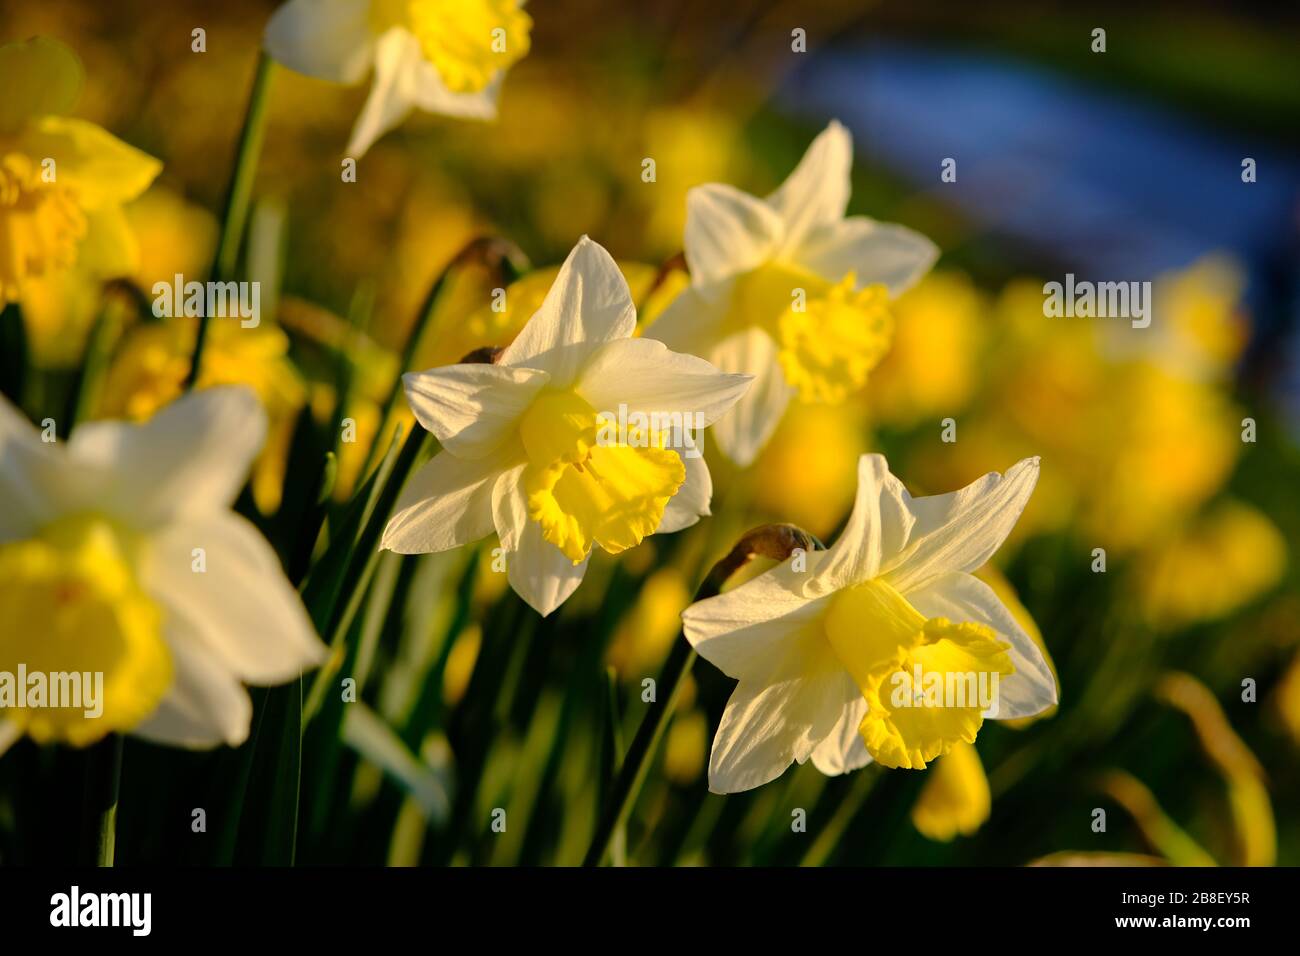 Die traditionelle Narzissenblüte mit gelben und weißen Blütenblättern. Narzissen (Narcissus) sind die schönsten Frühlingsblumen. Aufgenommen in Staffordshire, Großbritannien. Stockfoto